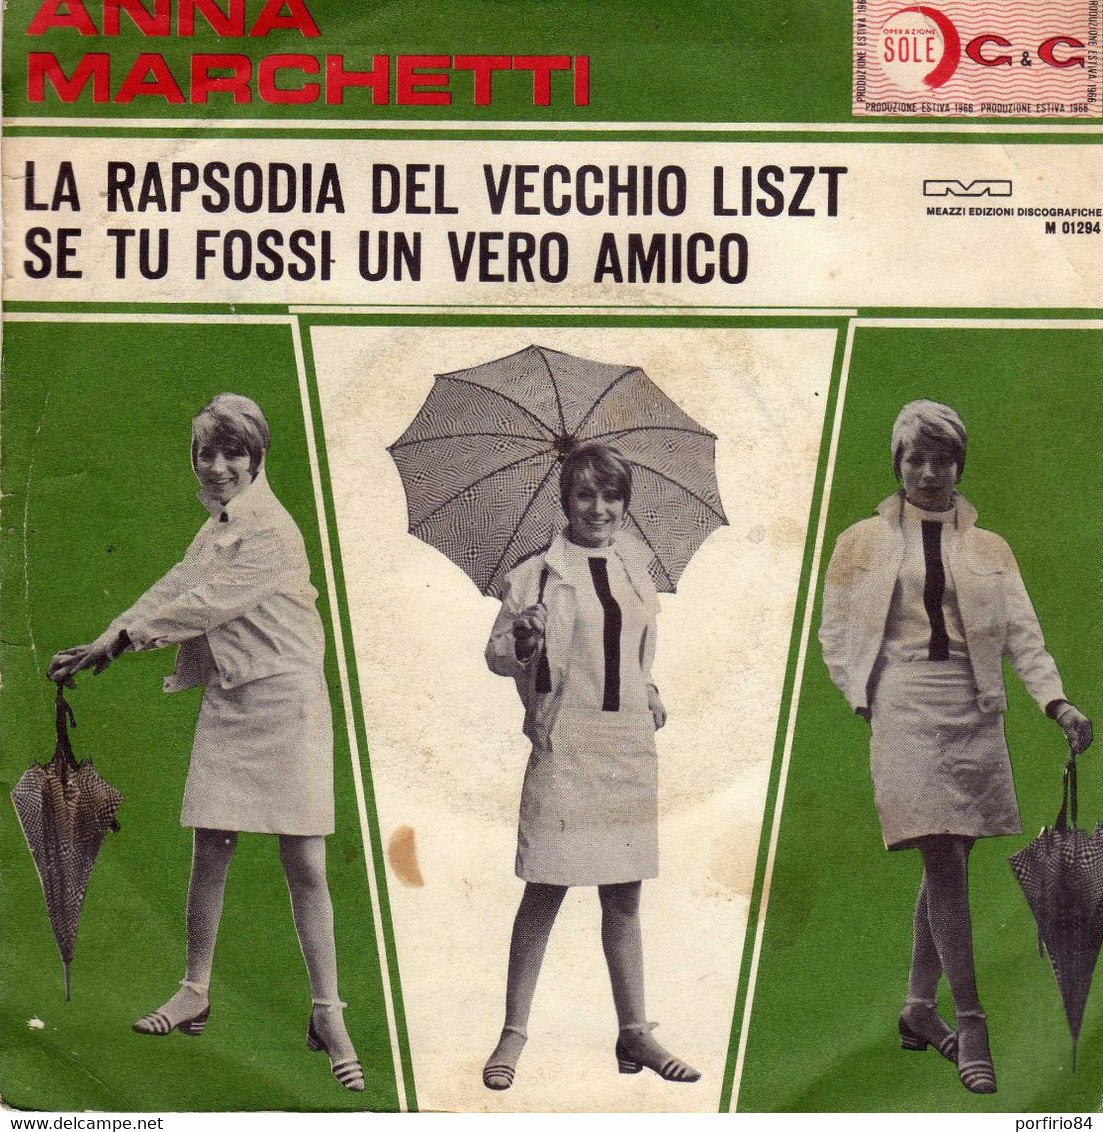 ANNA MARCHETTI 45 GIRI DEL 1966 LA RAPSODIA DEL VECCHI LISZT / SE TU FOSSI UN VERO AMICO - Other - Italian Music